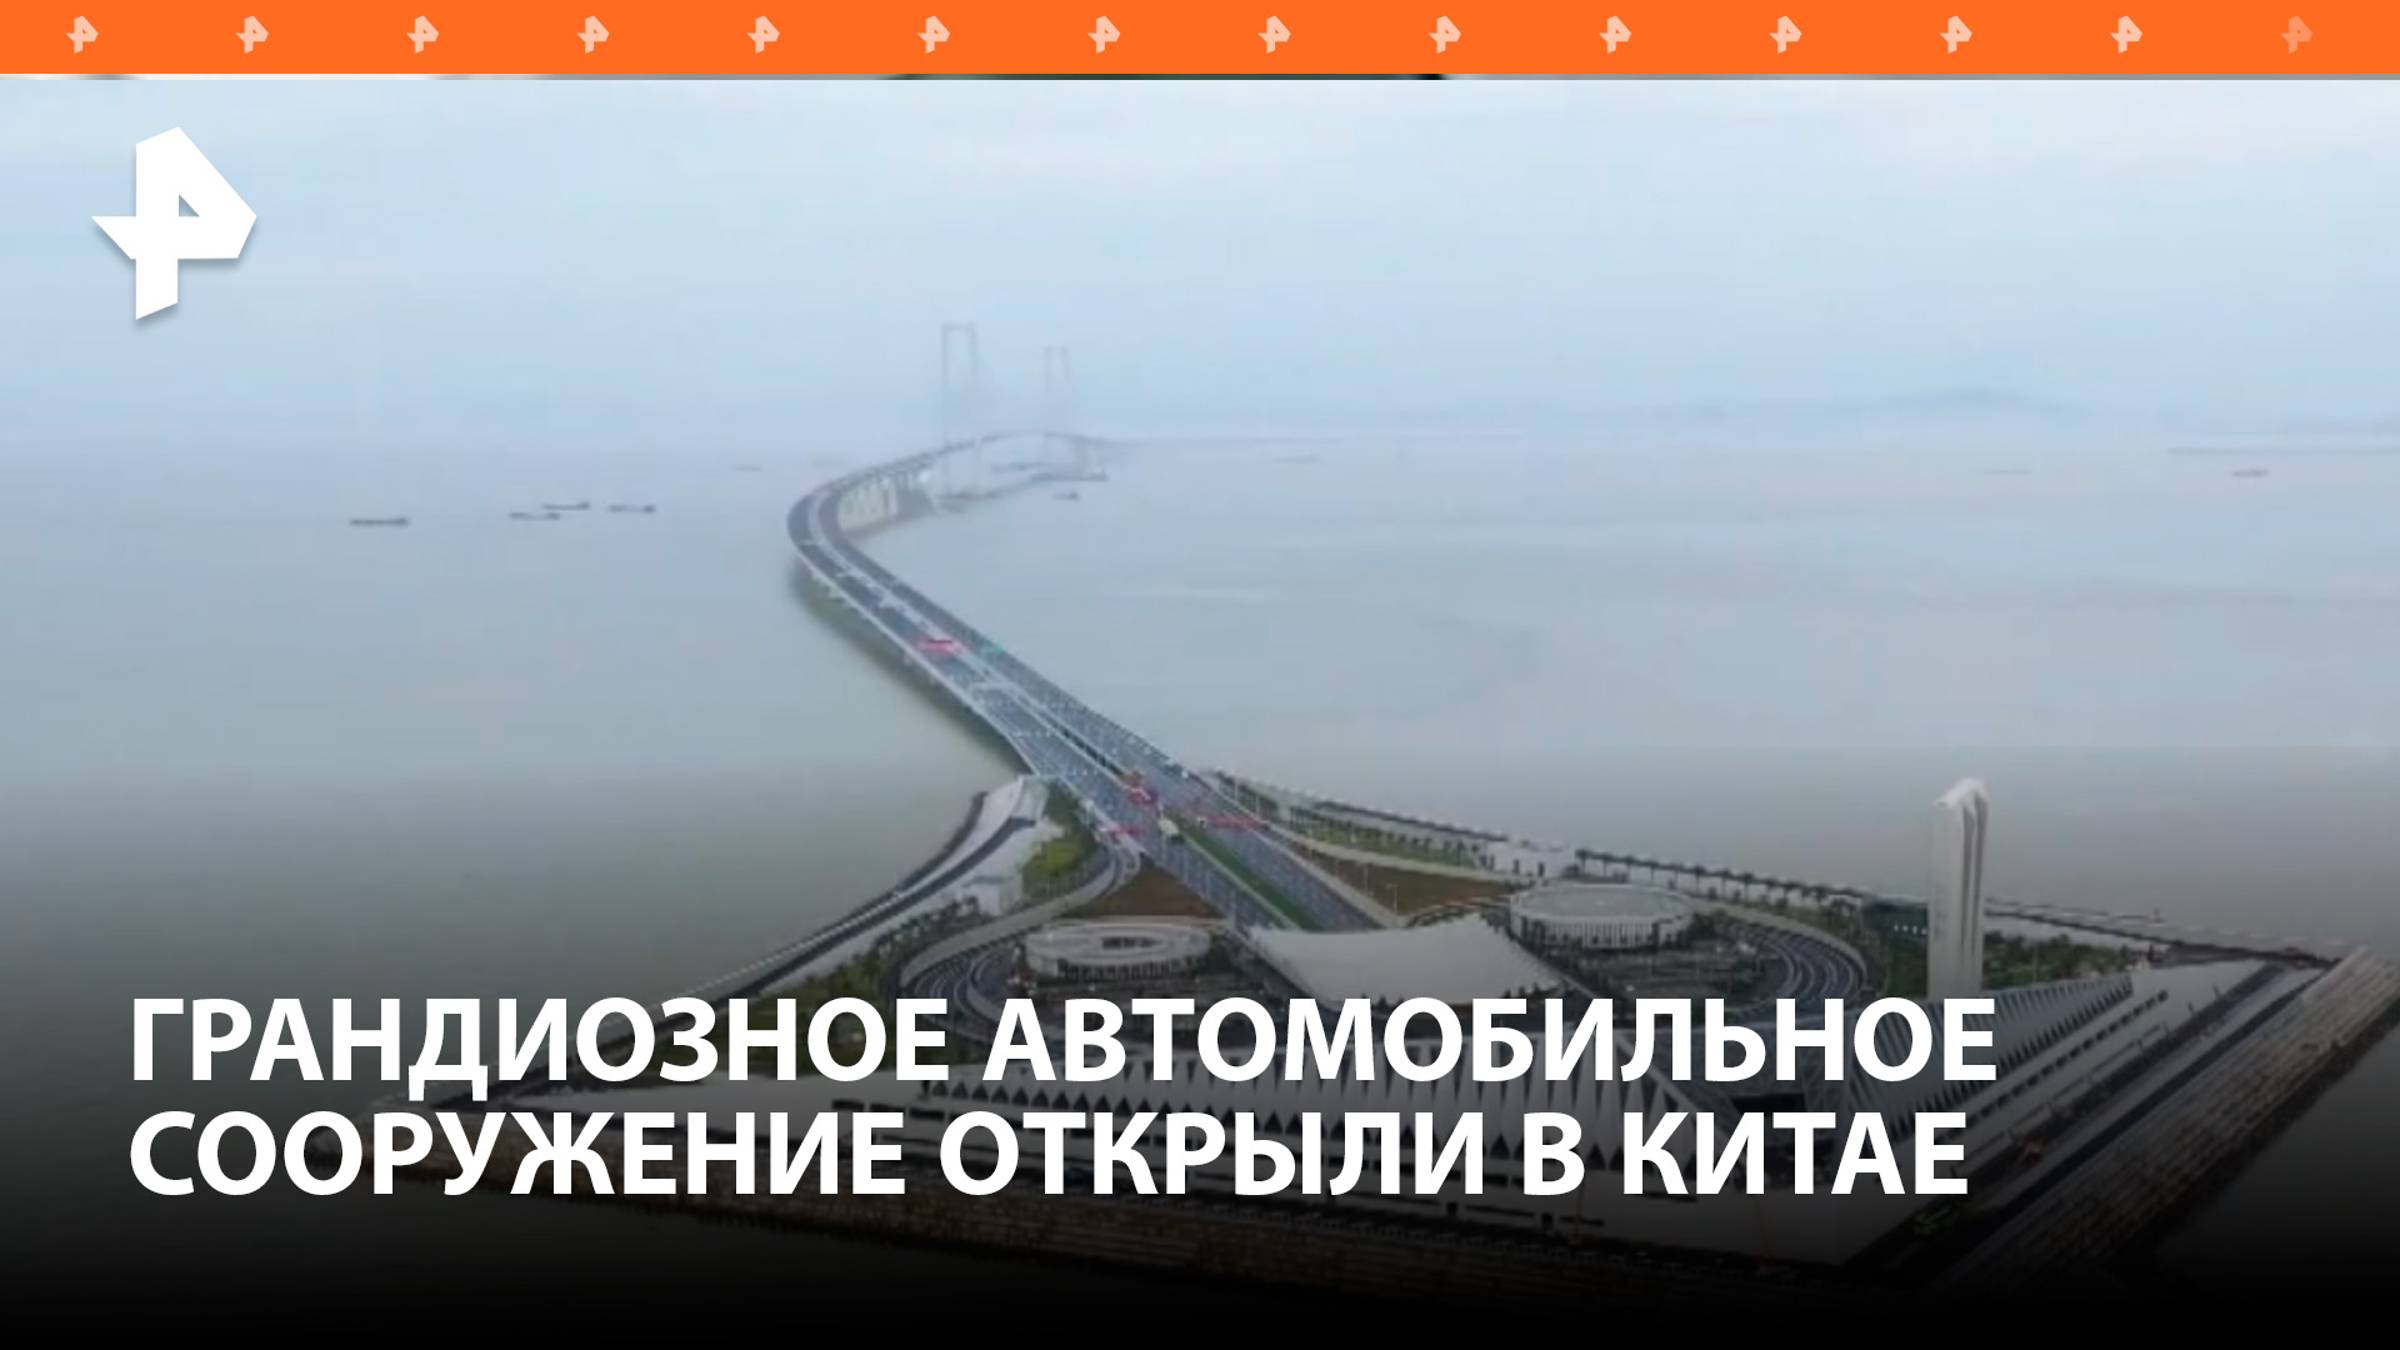 В Китае открыли морское шоссе, побившее 10 мировых рекордов / РЕН Новости